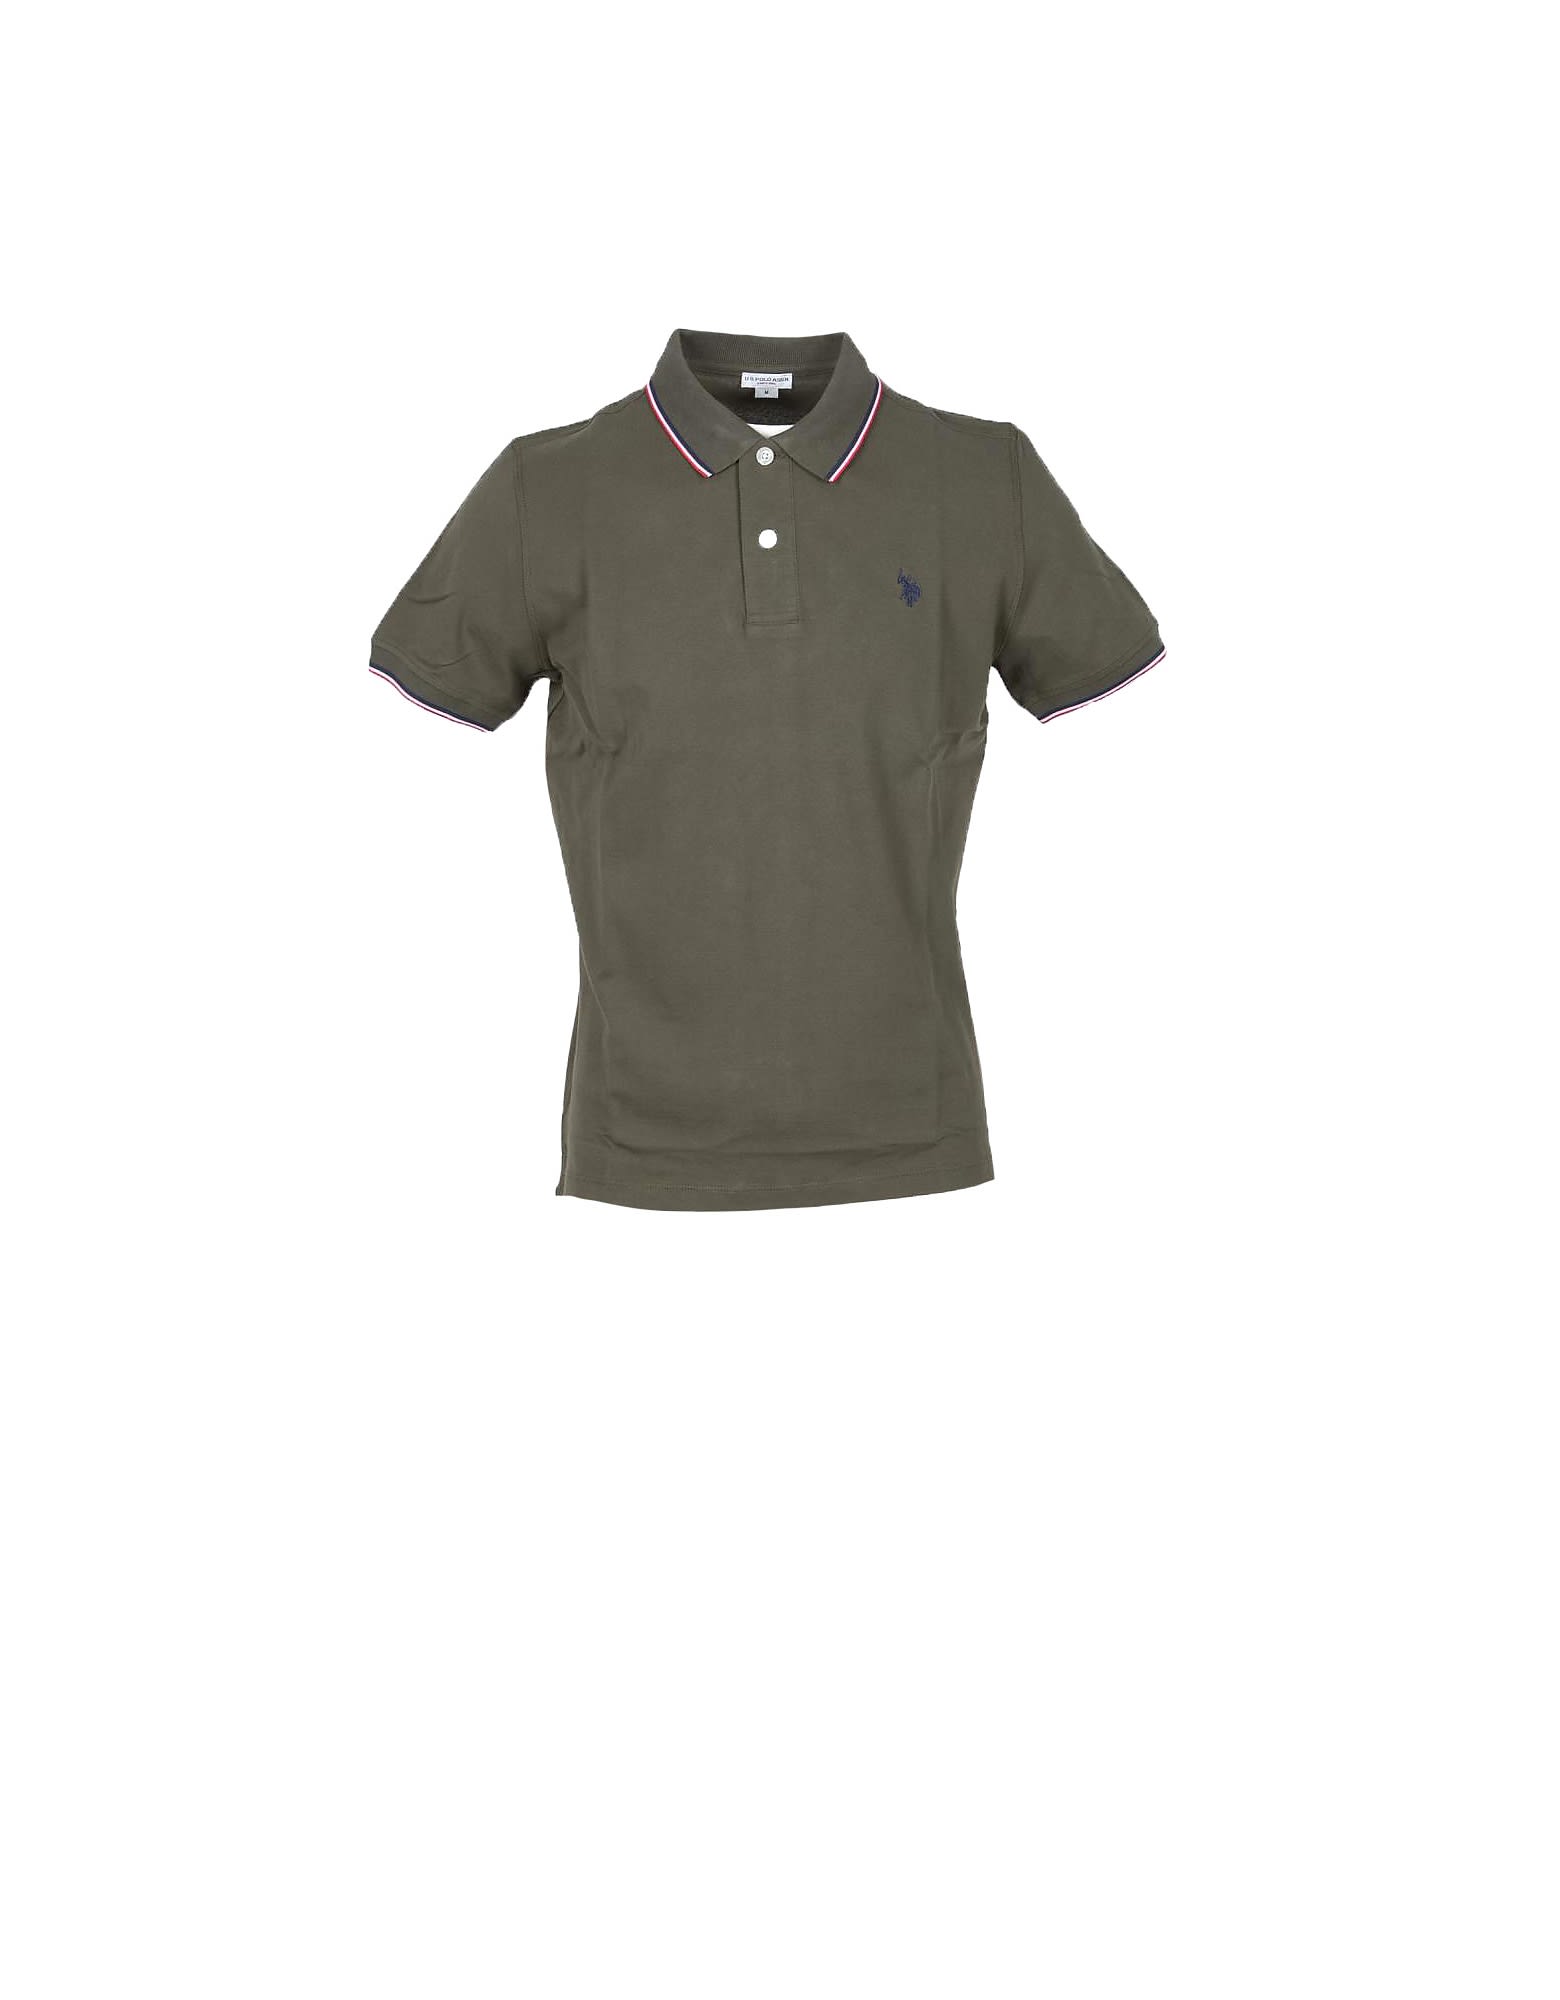 U.s. Polo Assn. Military Green Piqué Cotton Mens Polo Shirt